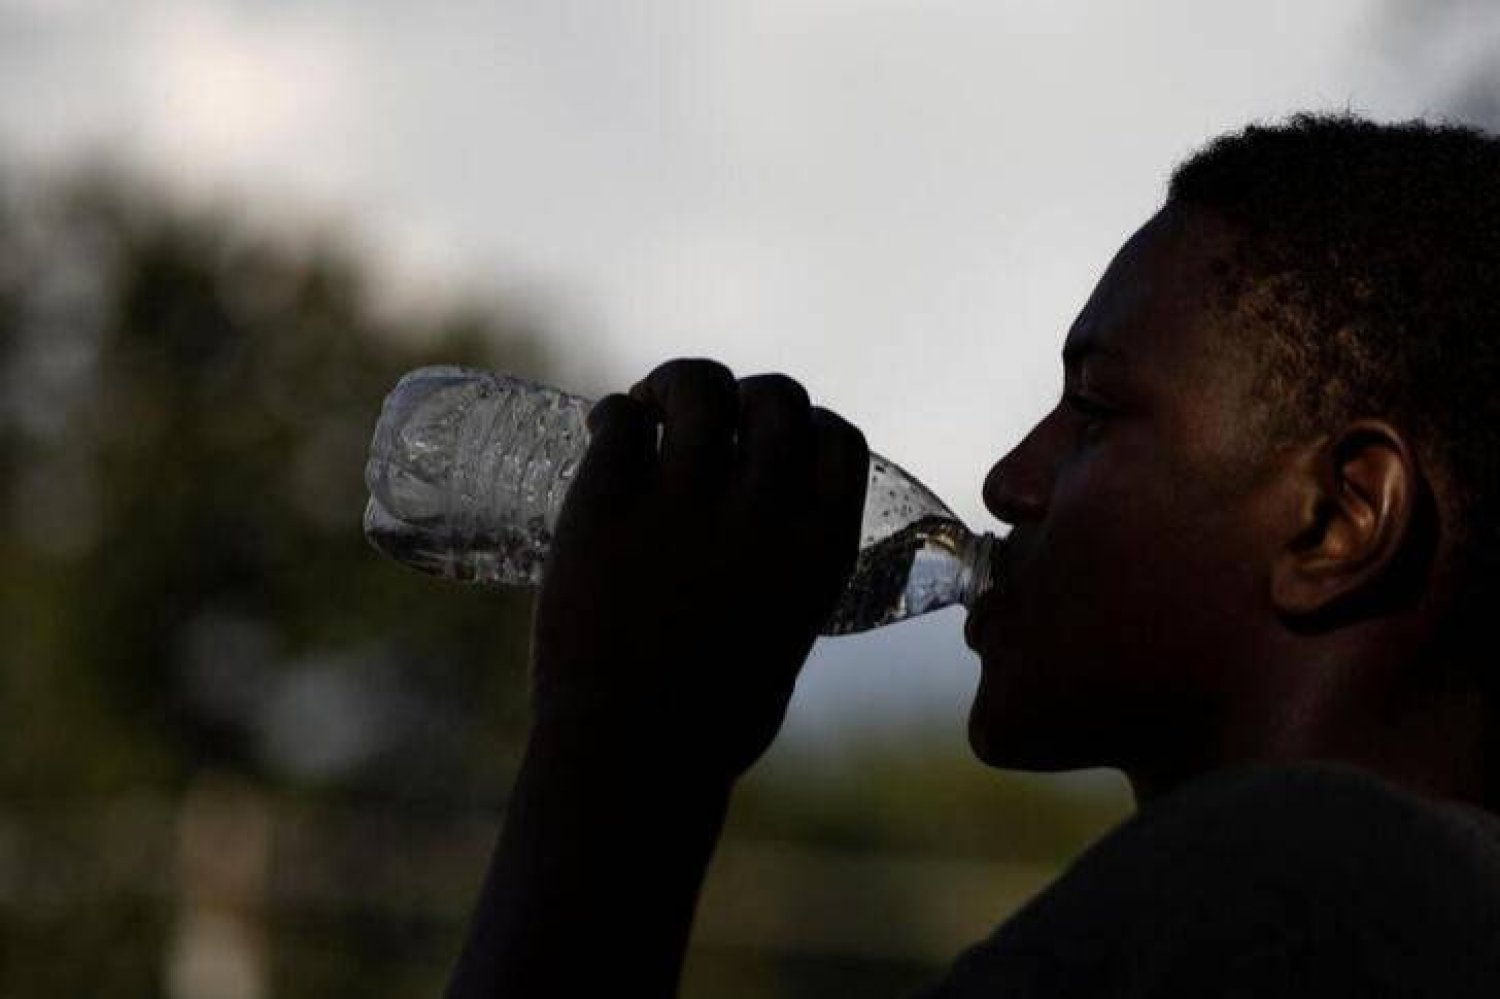 الكثير من الأشخاص يعانون بالفعل من مشكلة ترتبط بكرههم لطعم المياه (رويترز)